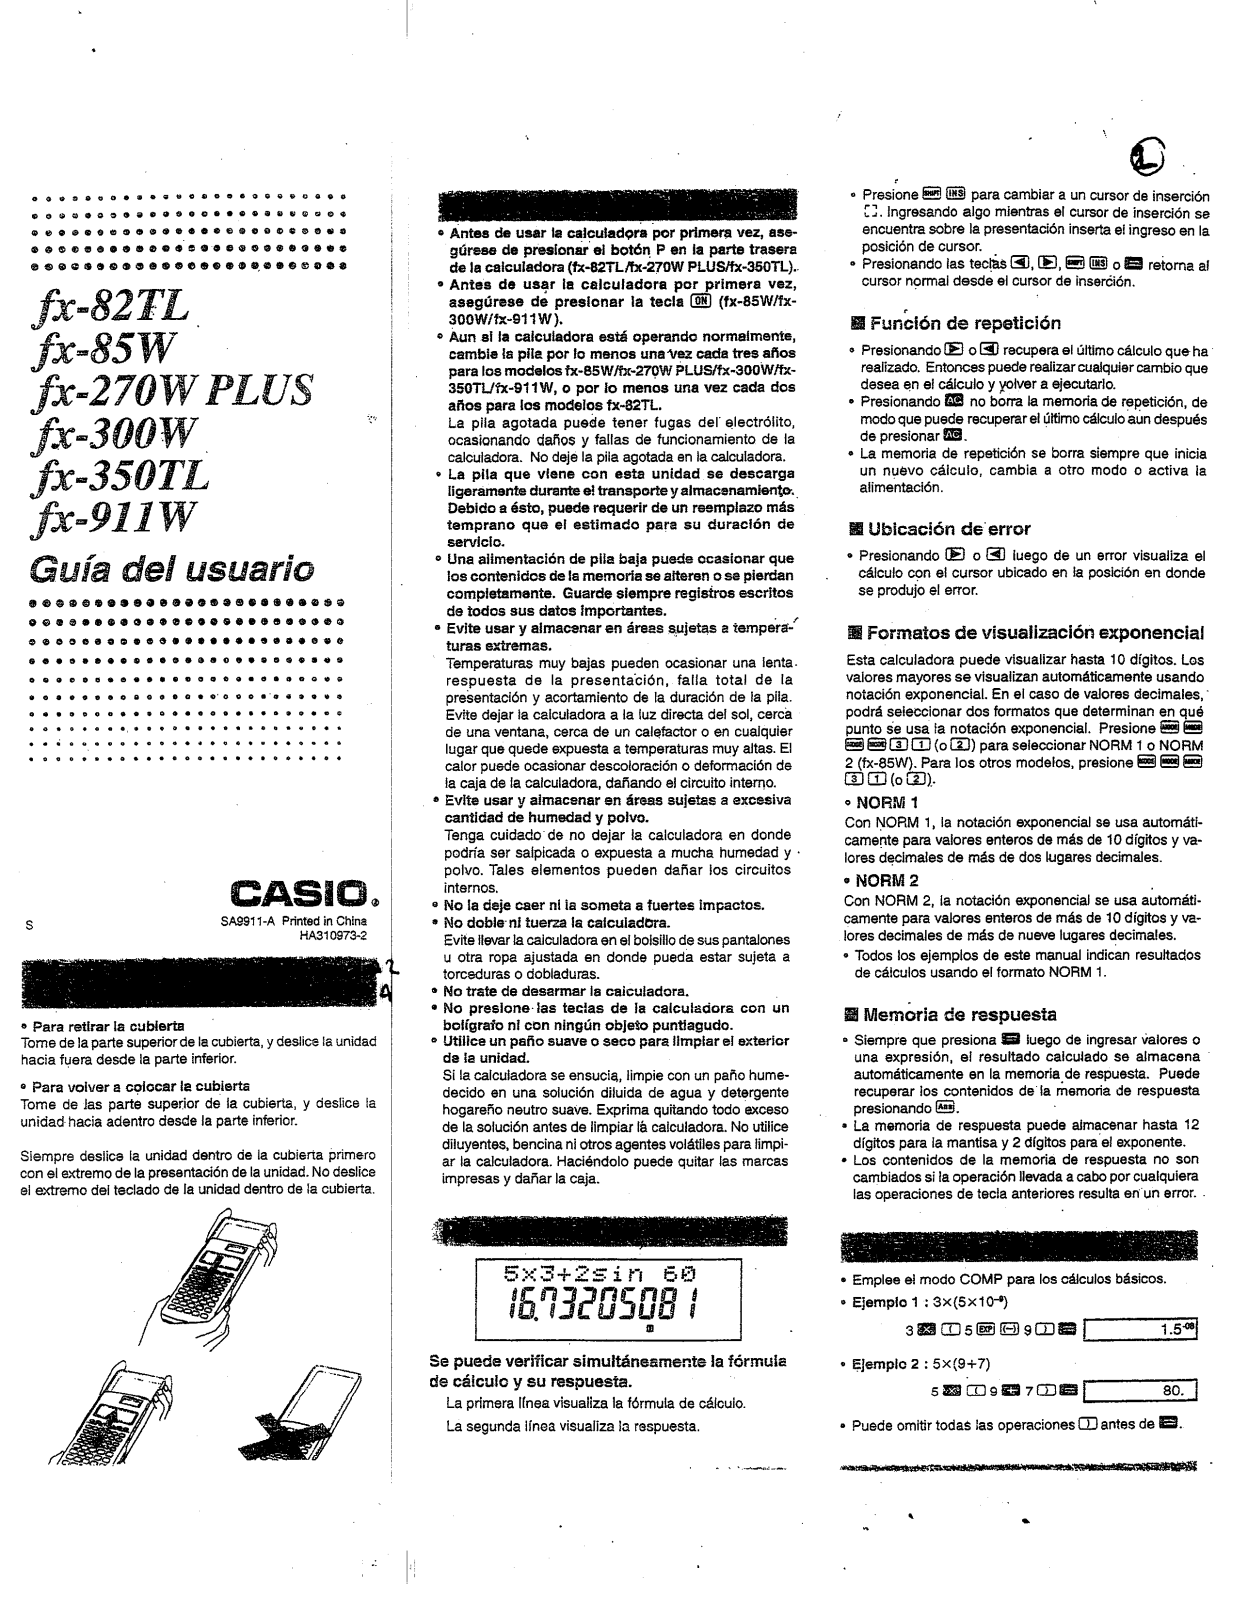 Casio FX-350TL, FX-82TL, FX-85W, FX-300W, FX-270W PLUS User Manual